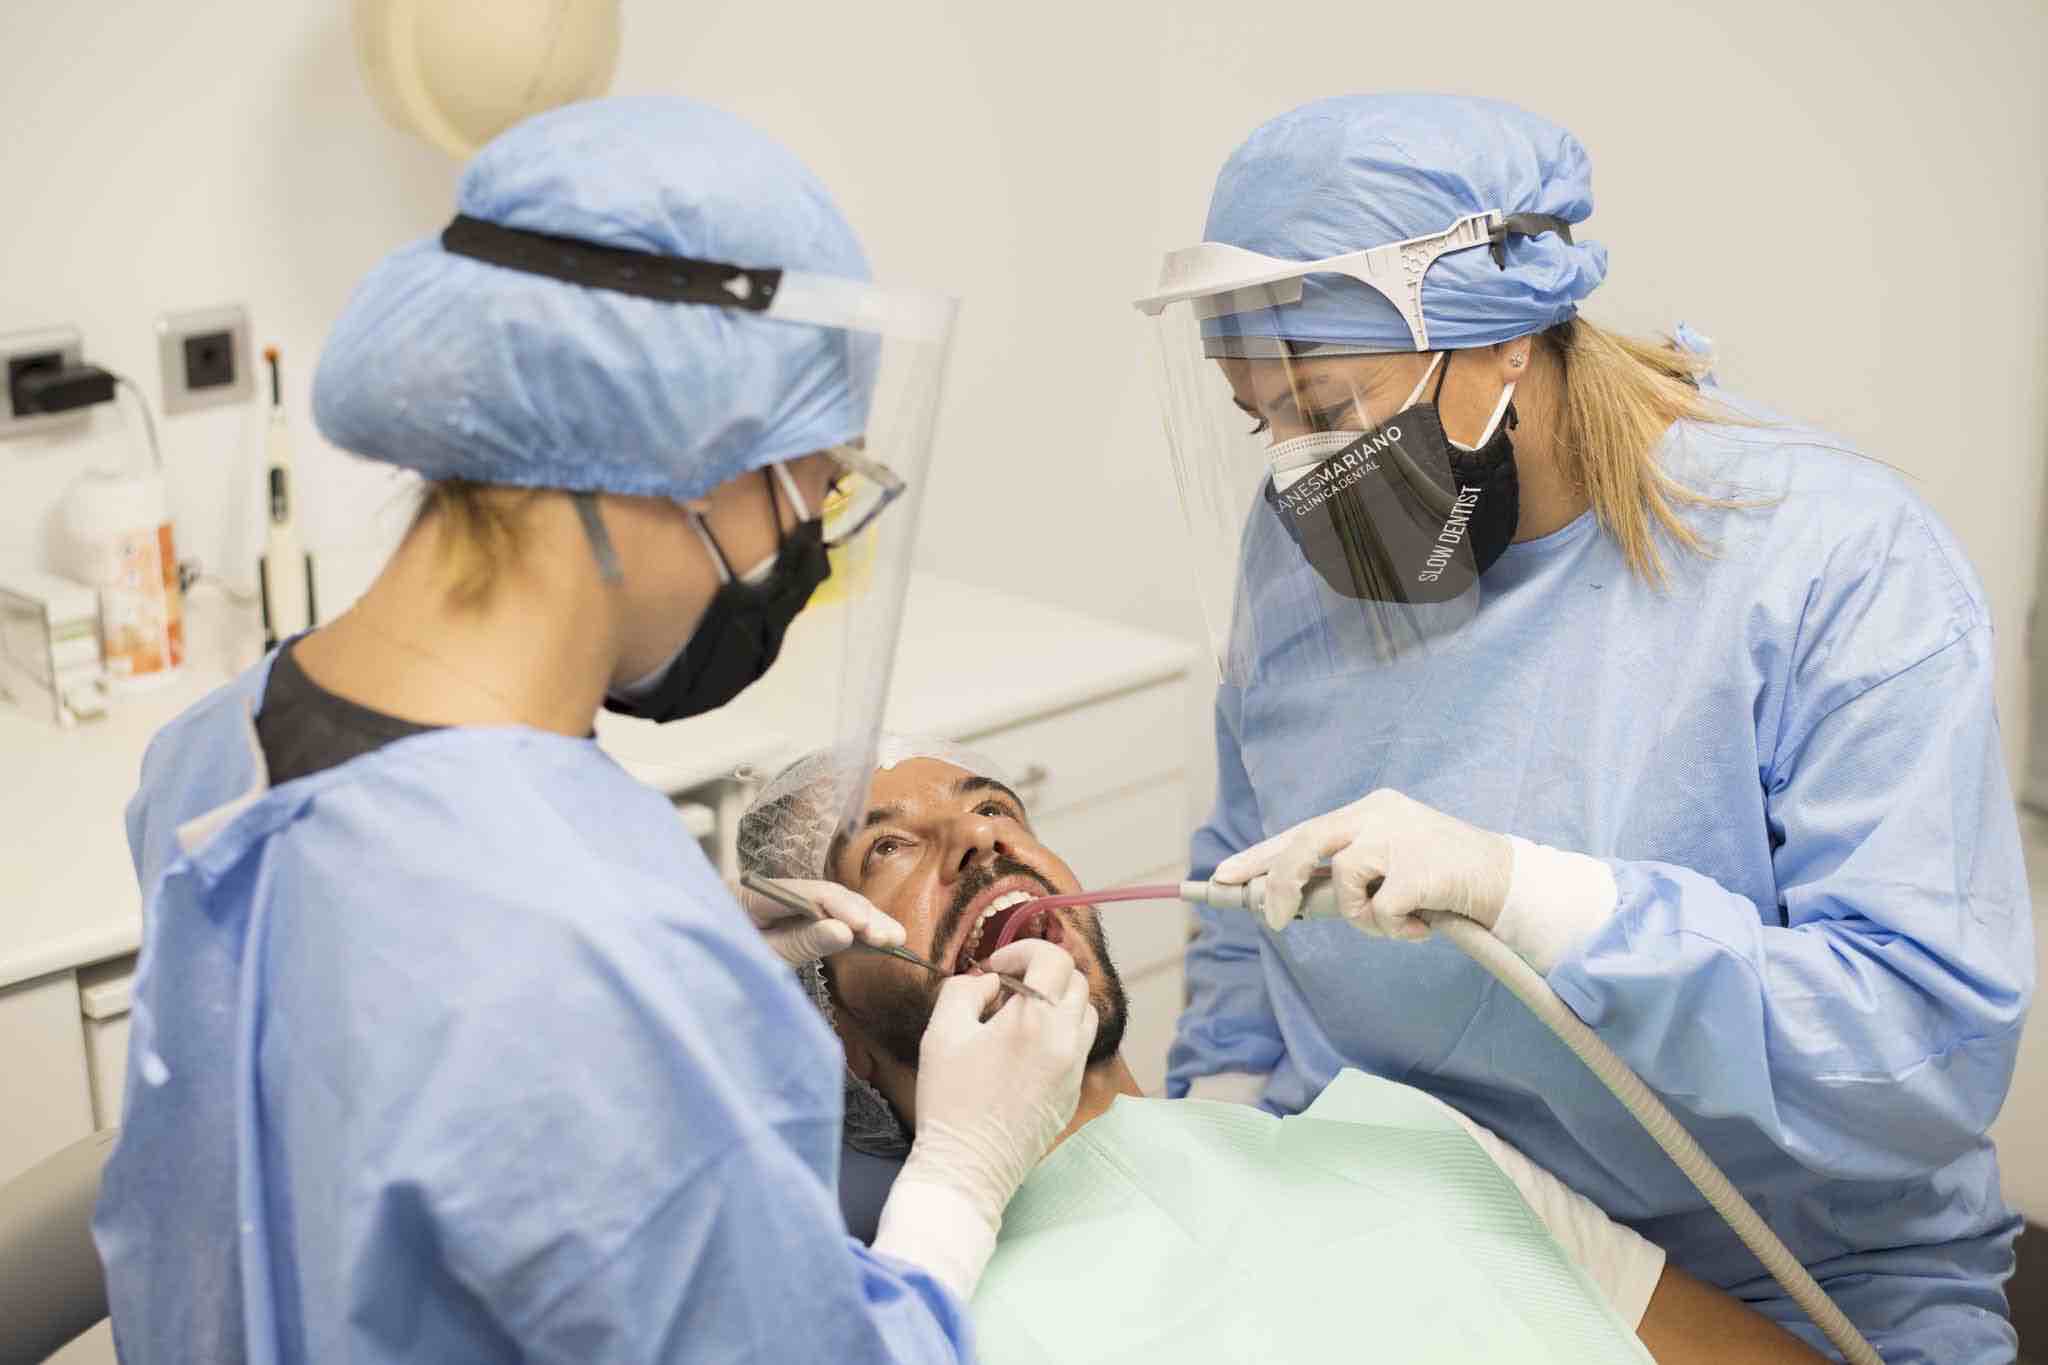 protocolo-covid19-dentista-en-el-centro-de-palma-planesmariano-dental